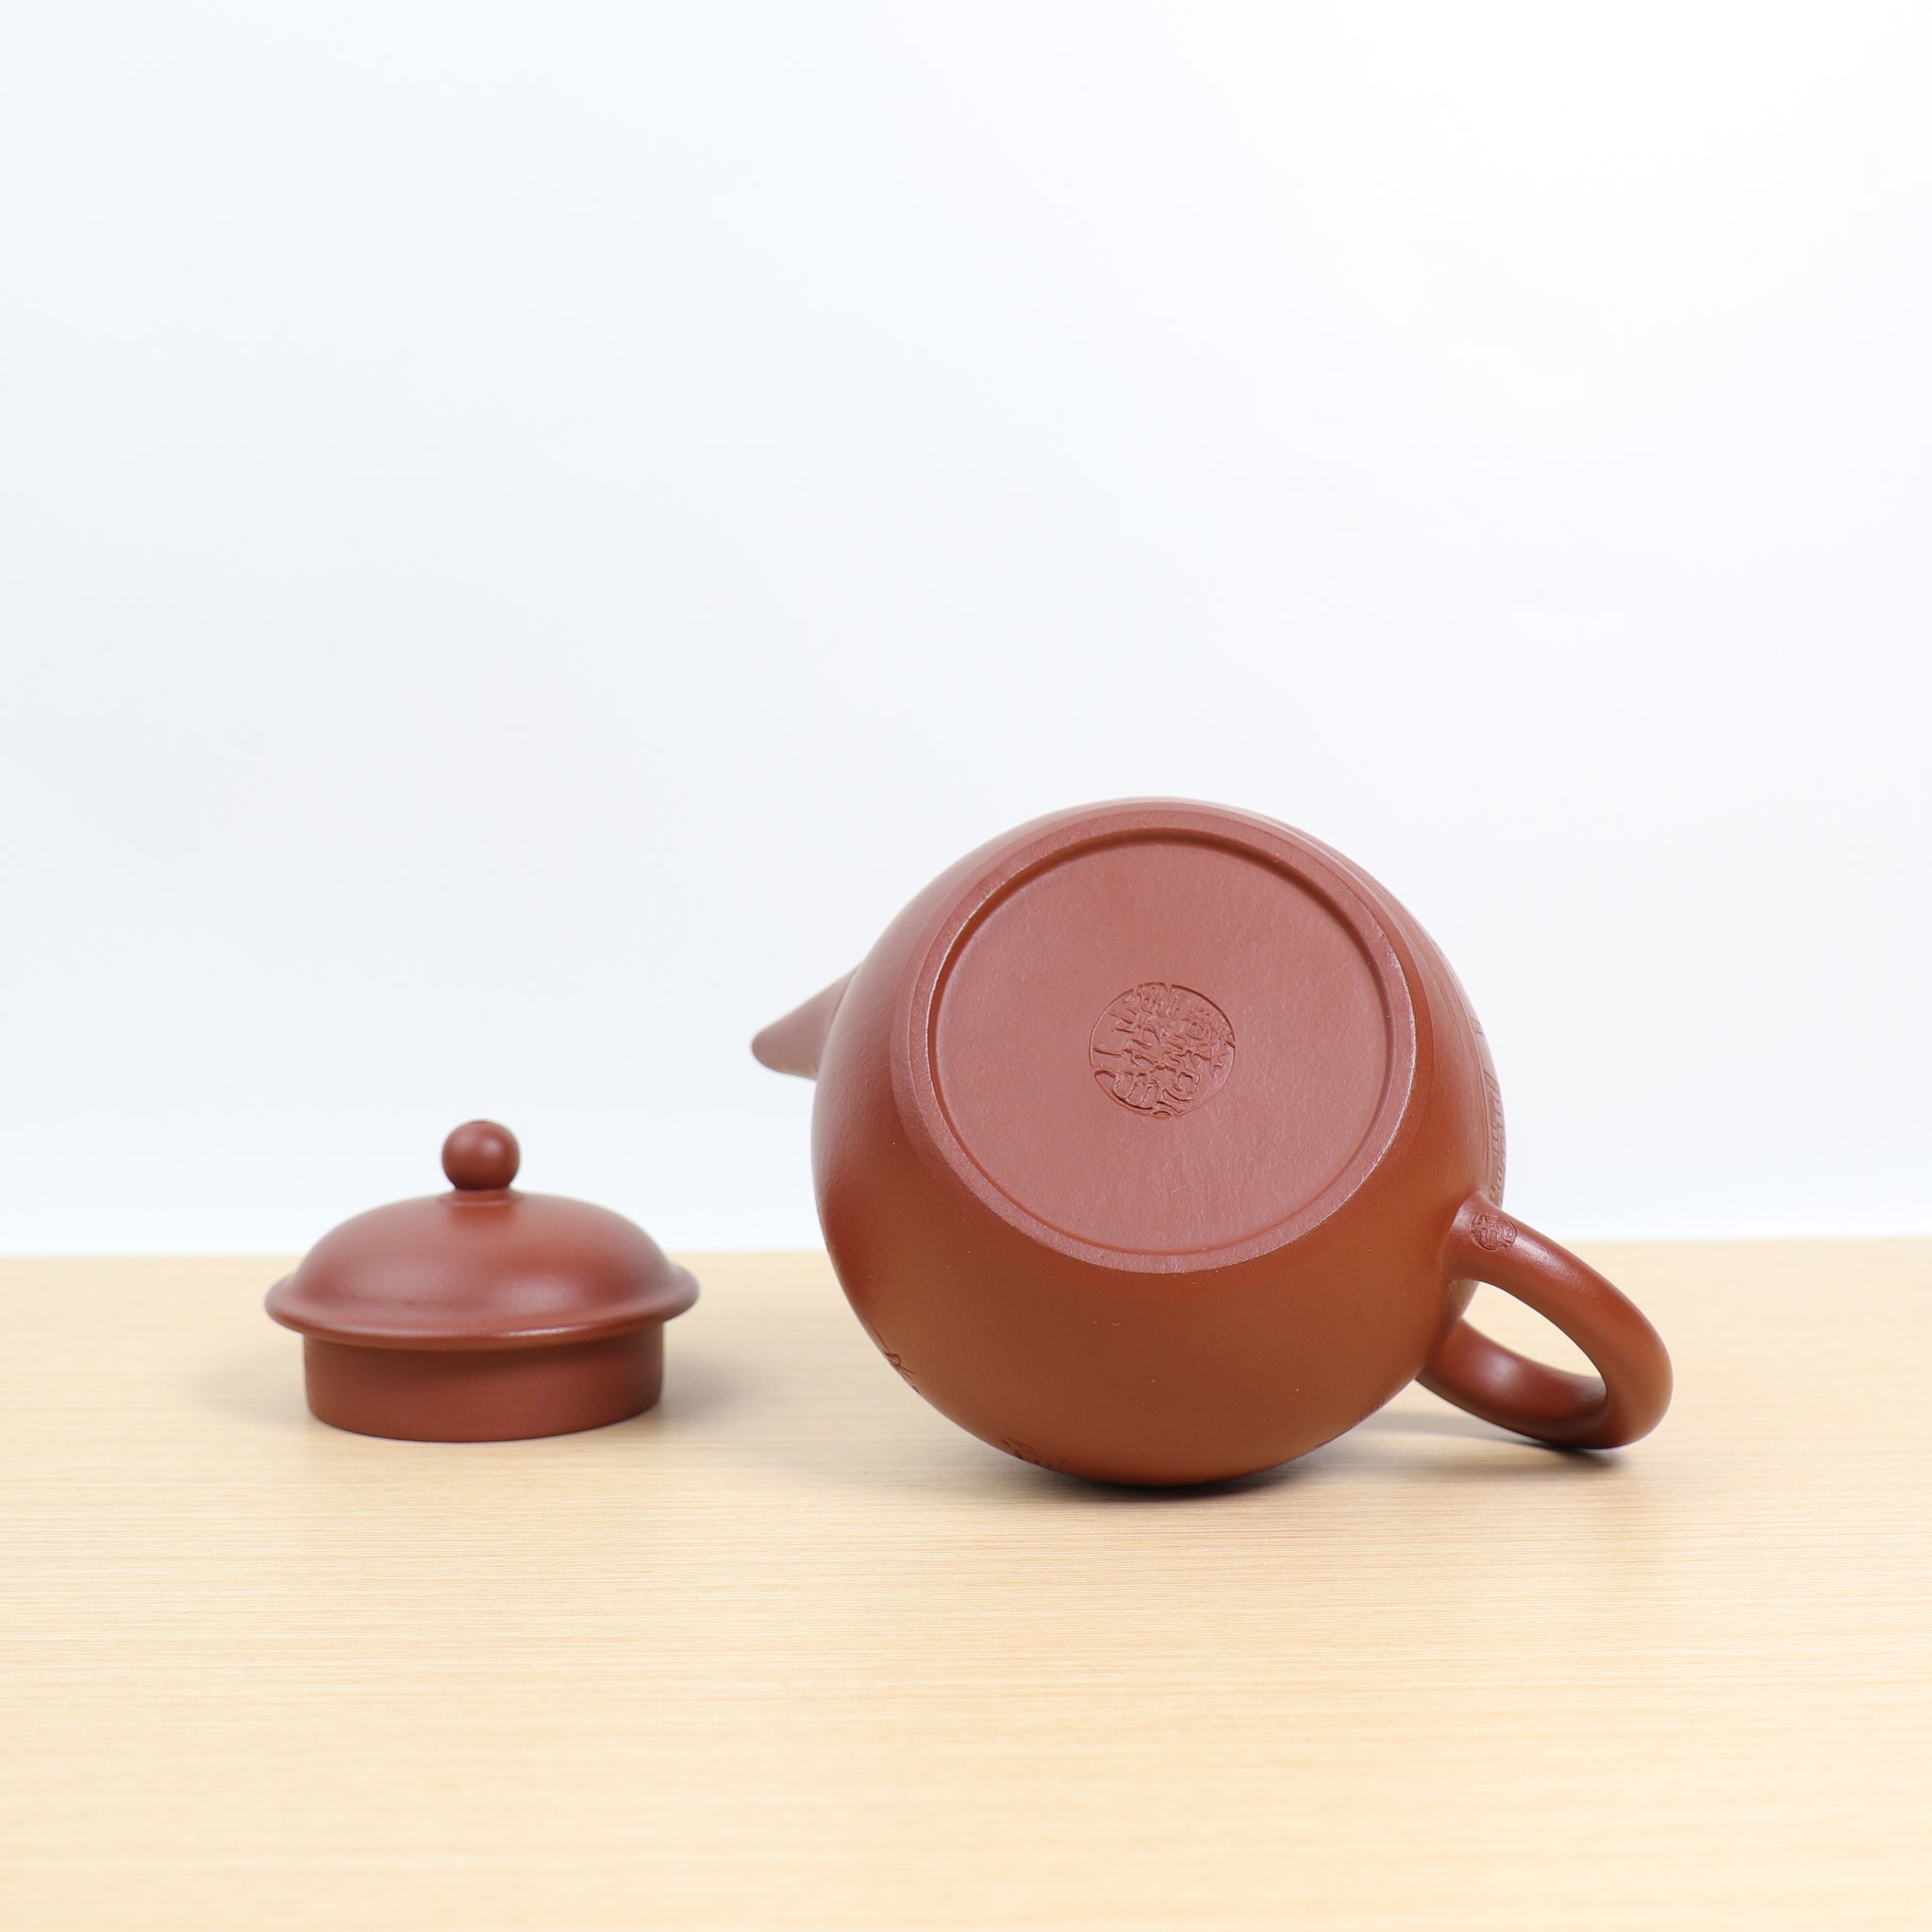 【高水平】全手工朱泥大紅袍刻繪紫砂茶壺